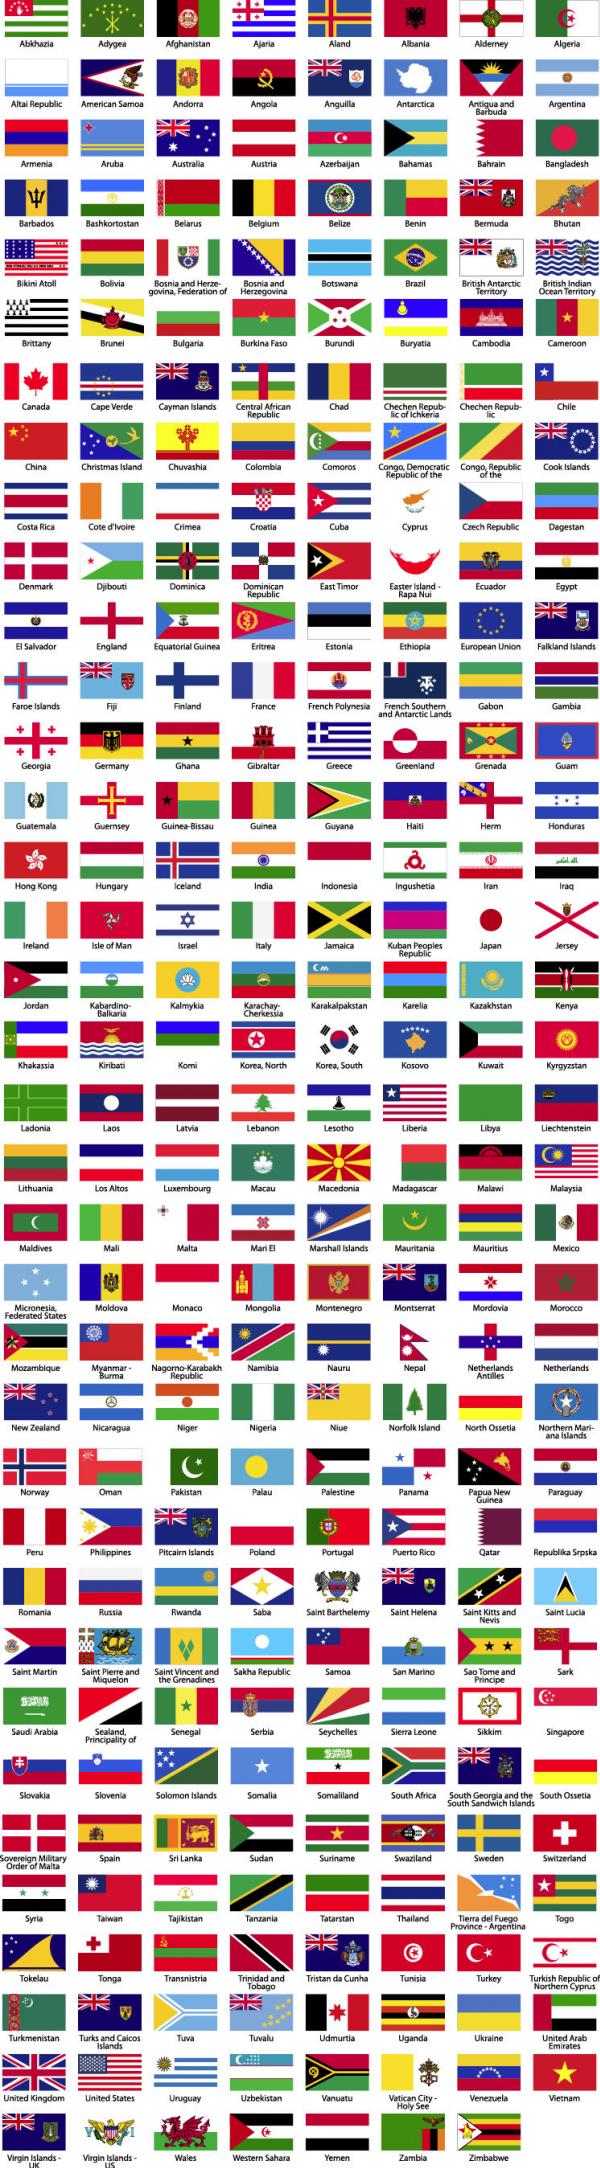 ธงชาติ ทั่วโลก